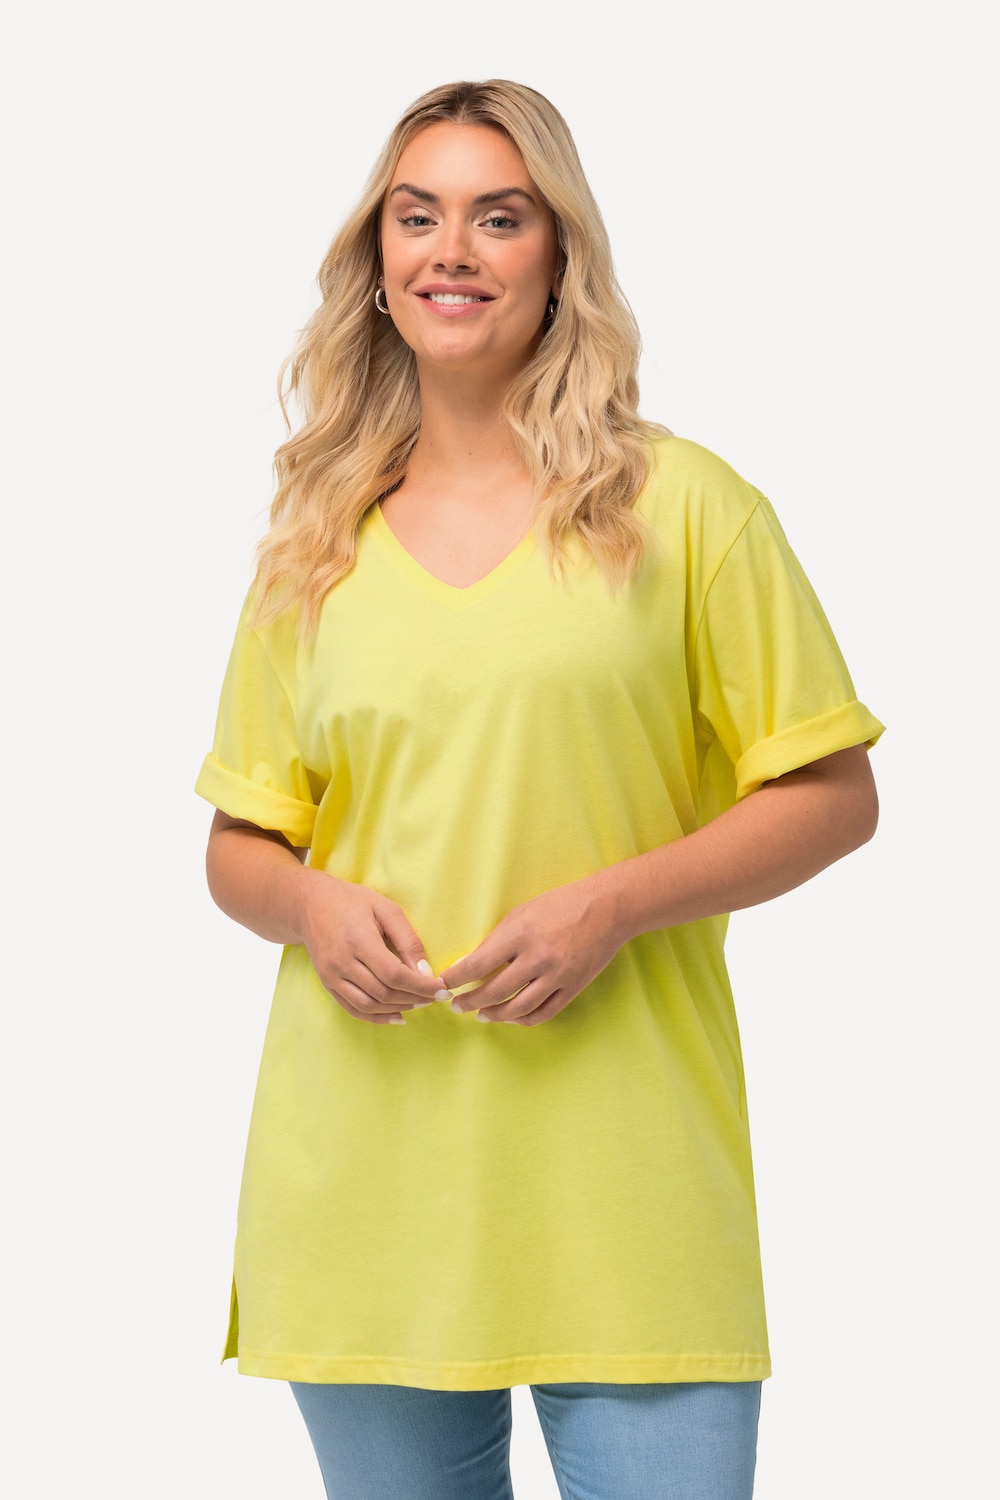 Grote Maten T-Shirt, Dames, geel, Maat: 58/60, Katoen/Viscose, Ulla Popken